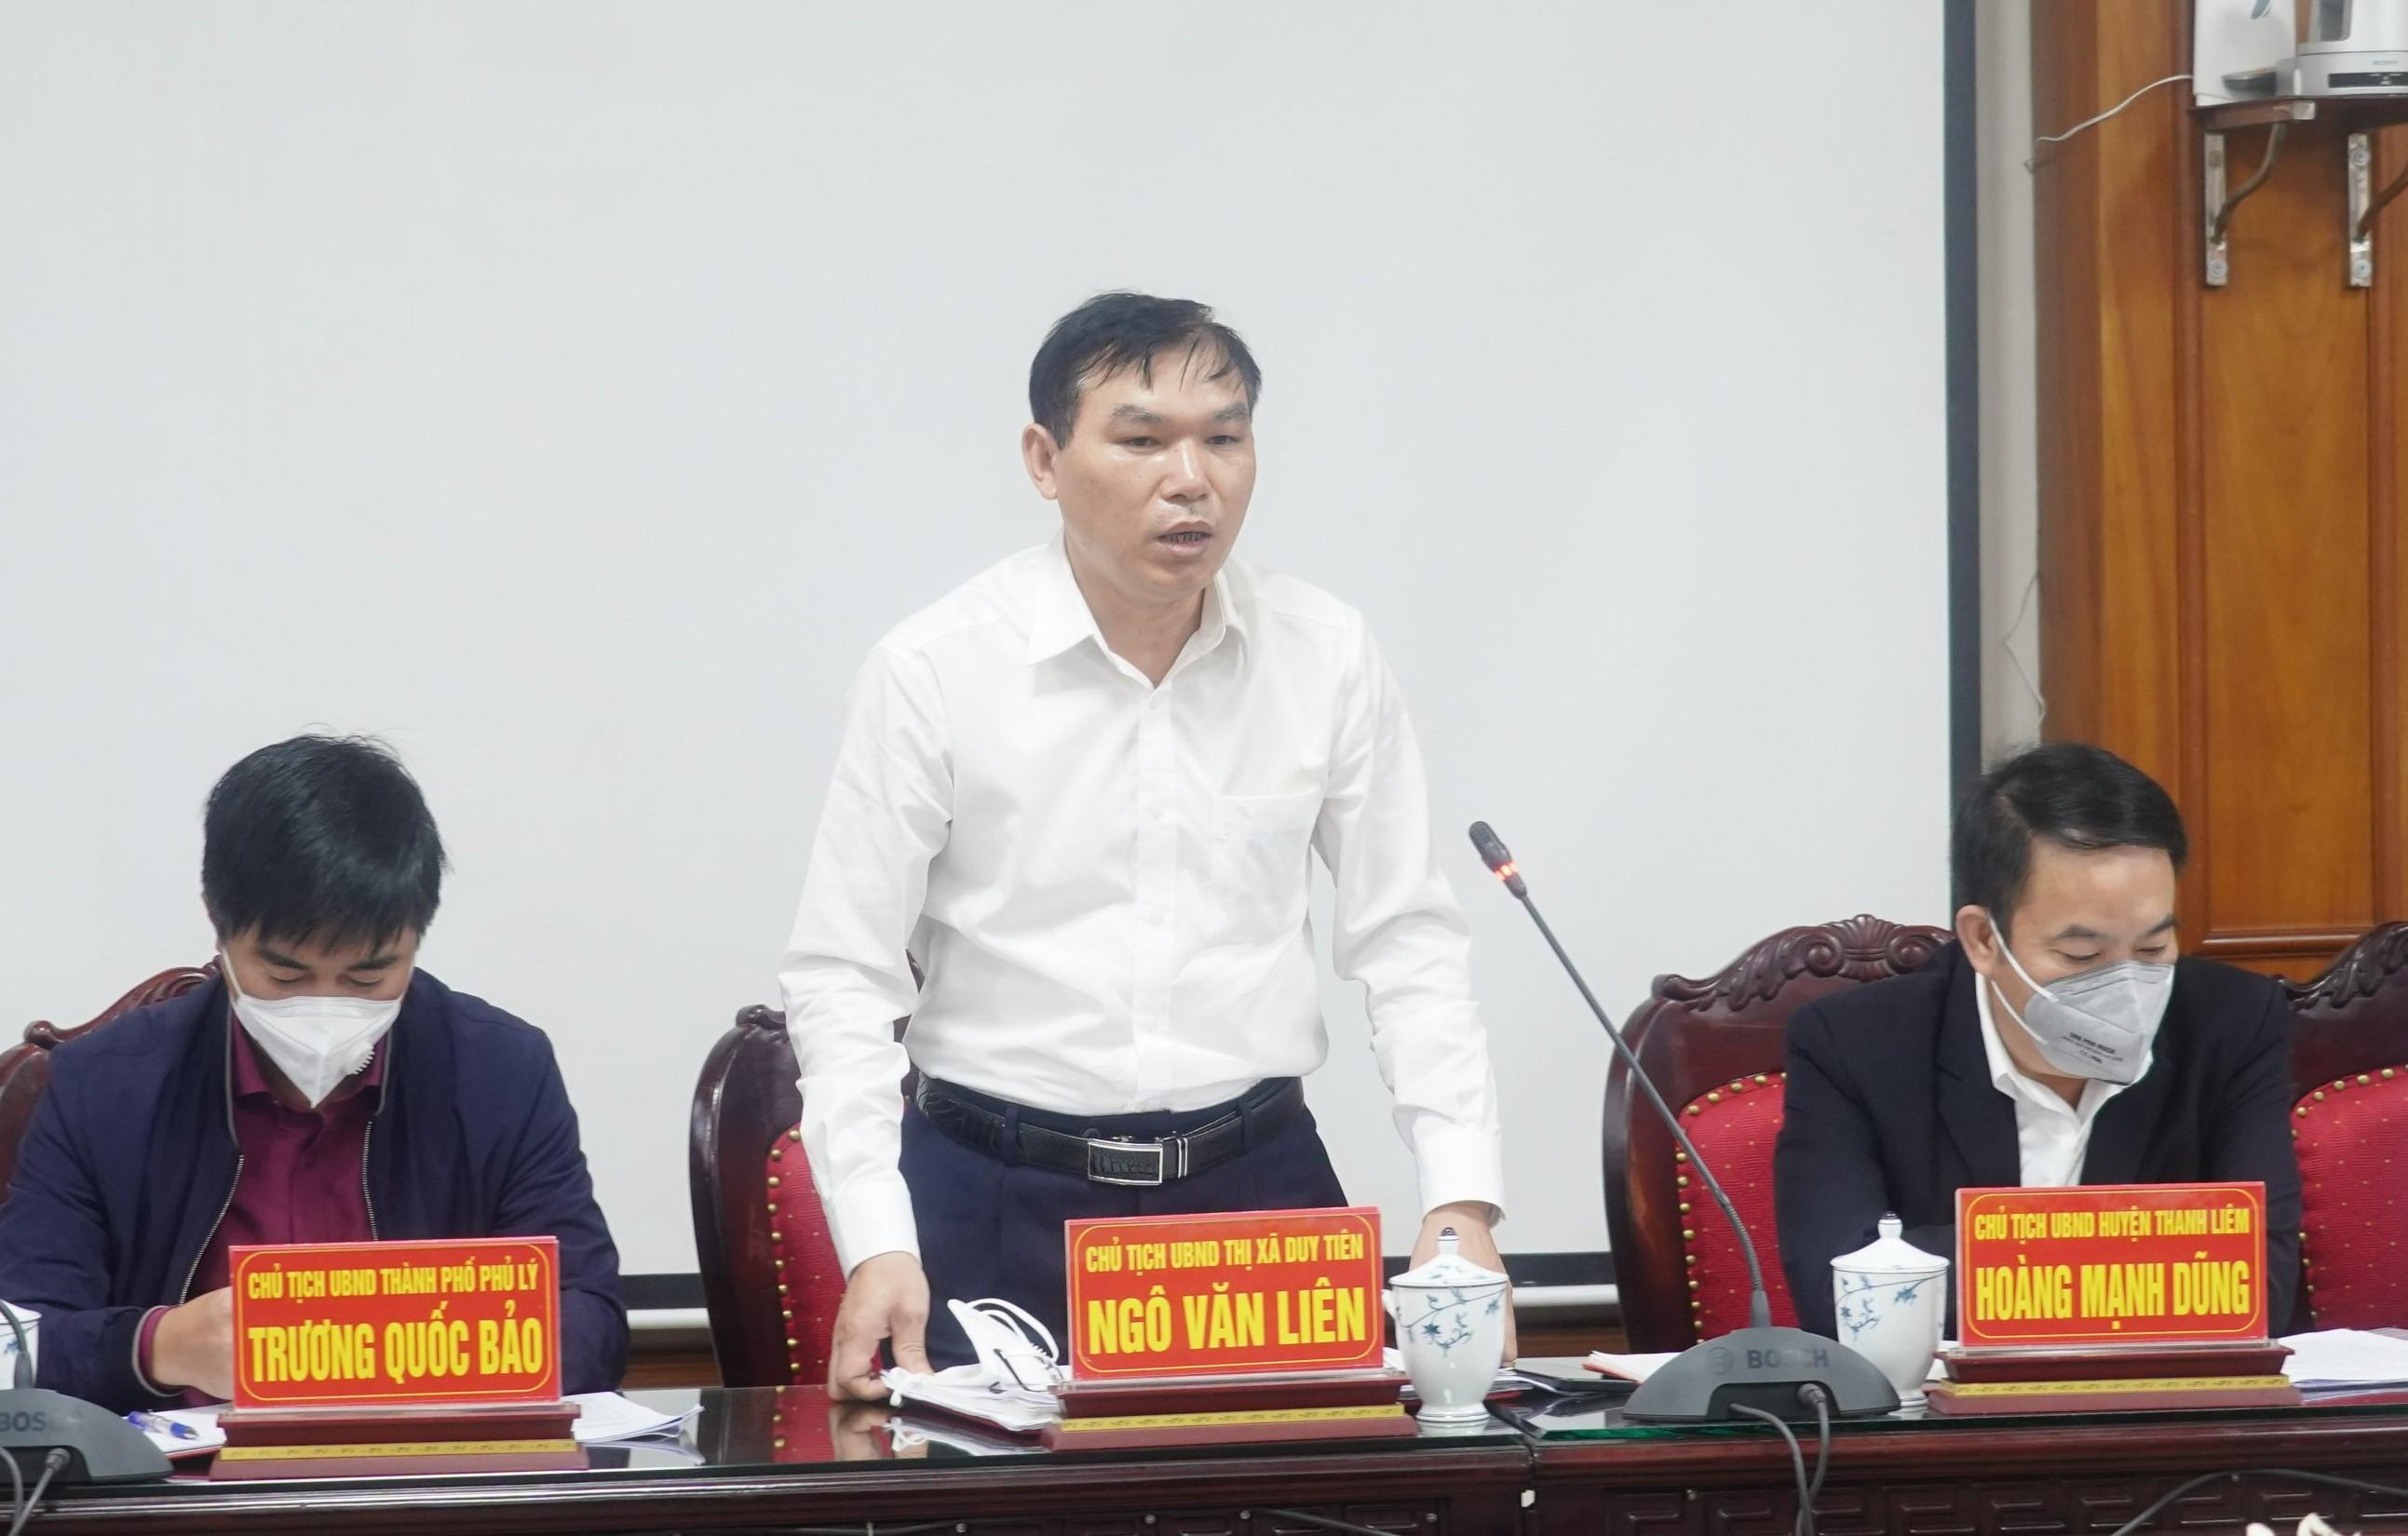 Đồng chí Chủ tịch UBND Thị xã Duy Tiên, tỉnh Hà Nam phát biểu tại Hội nghị